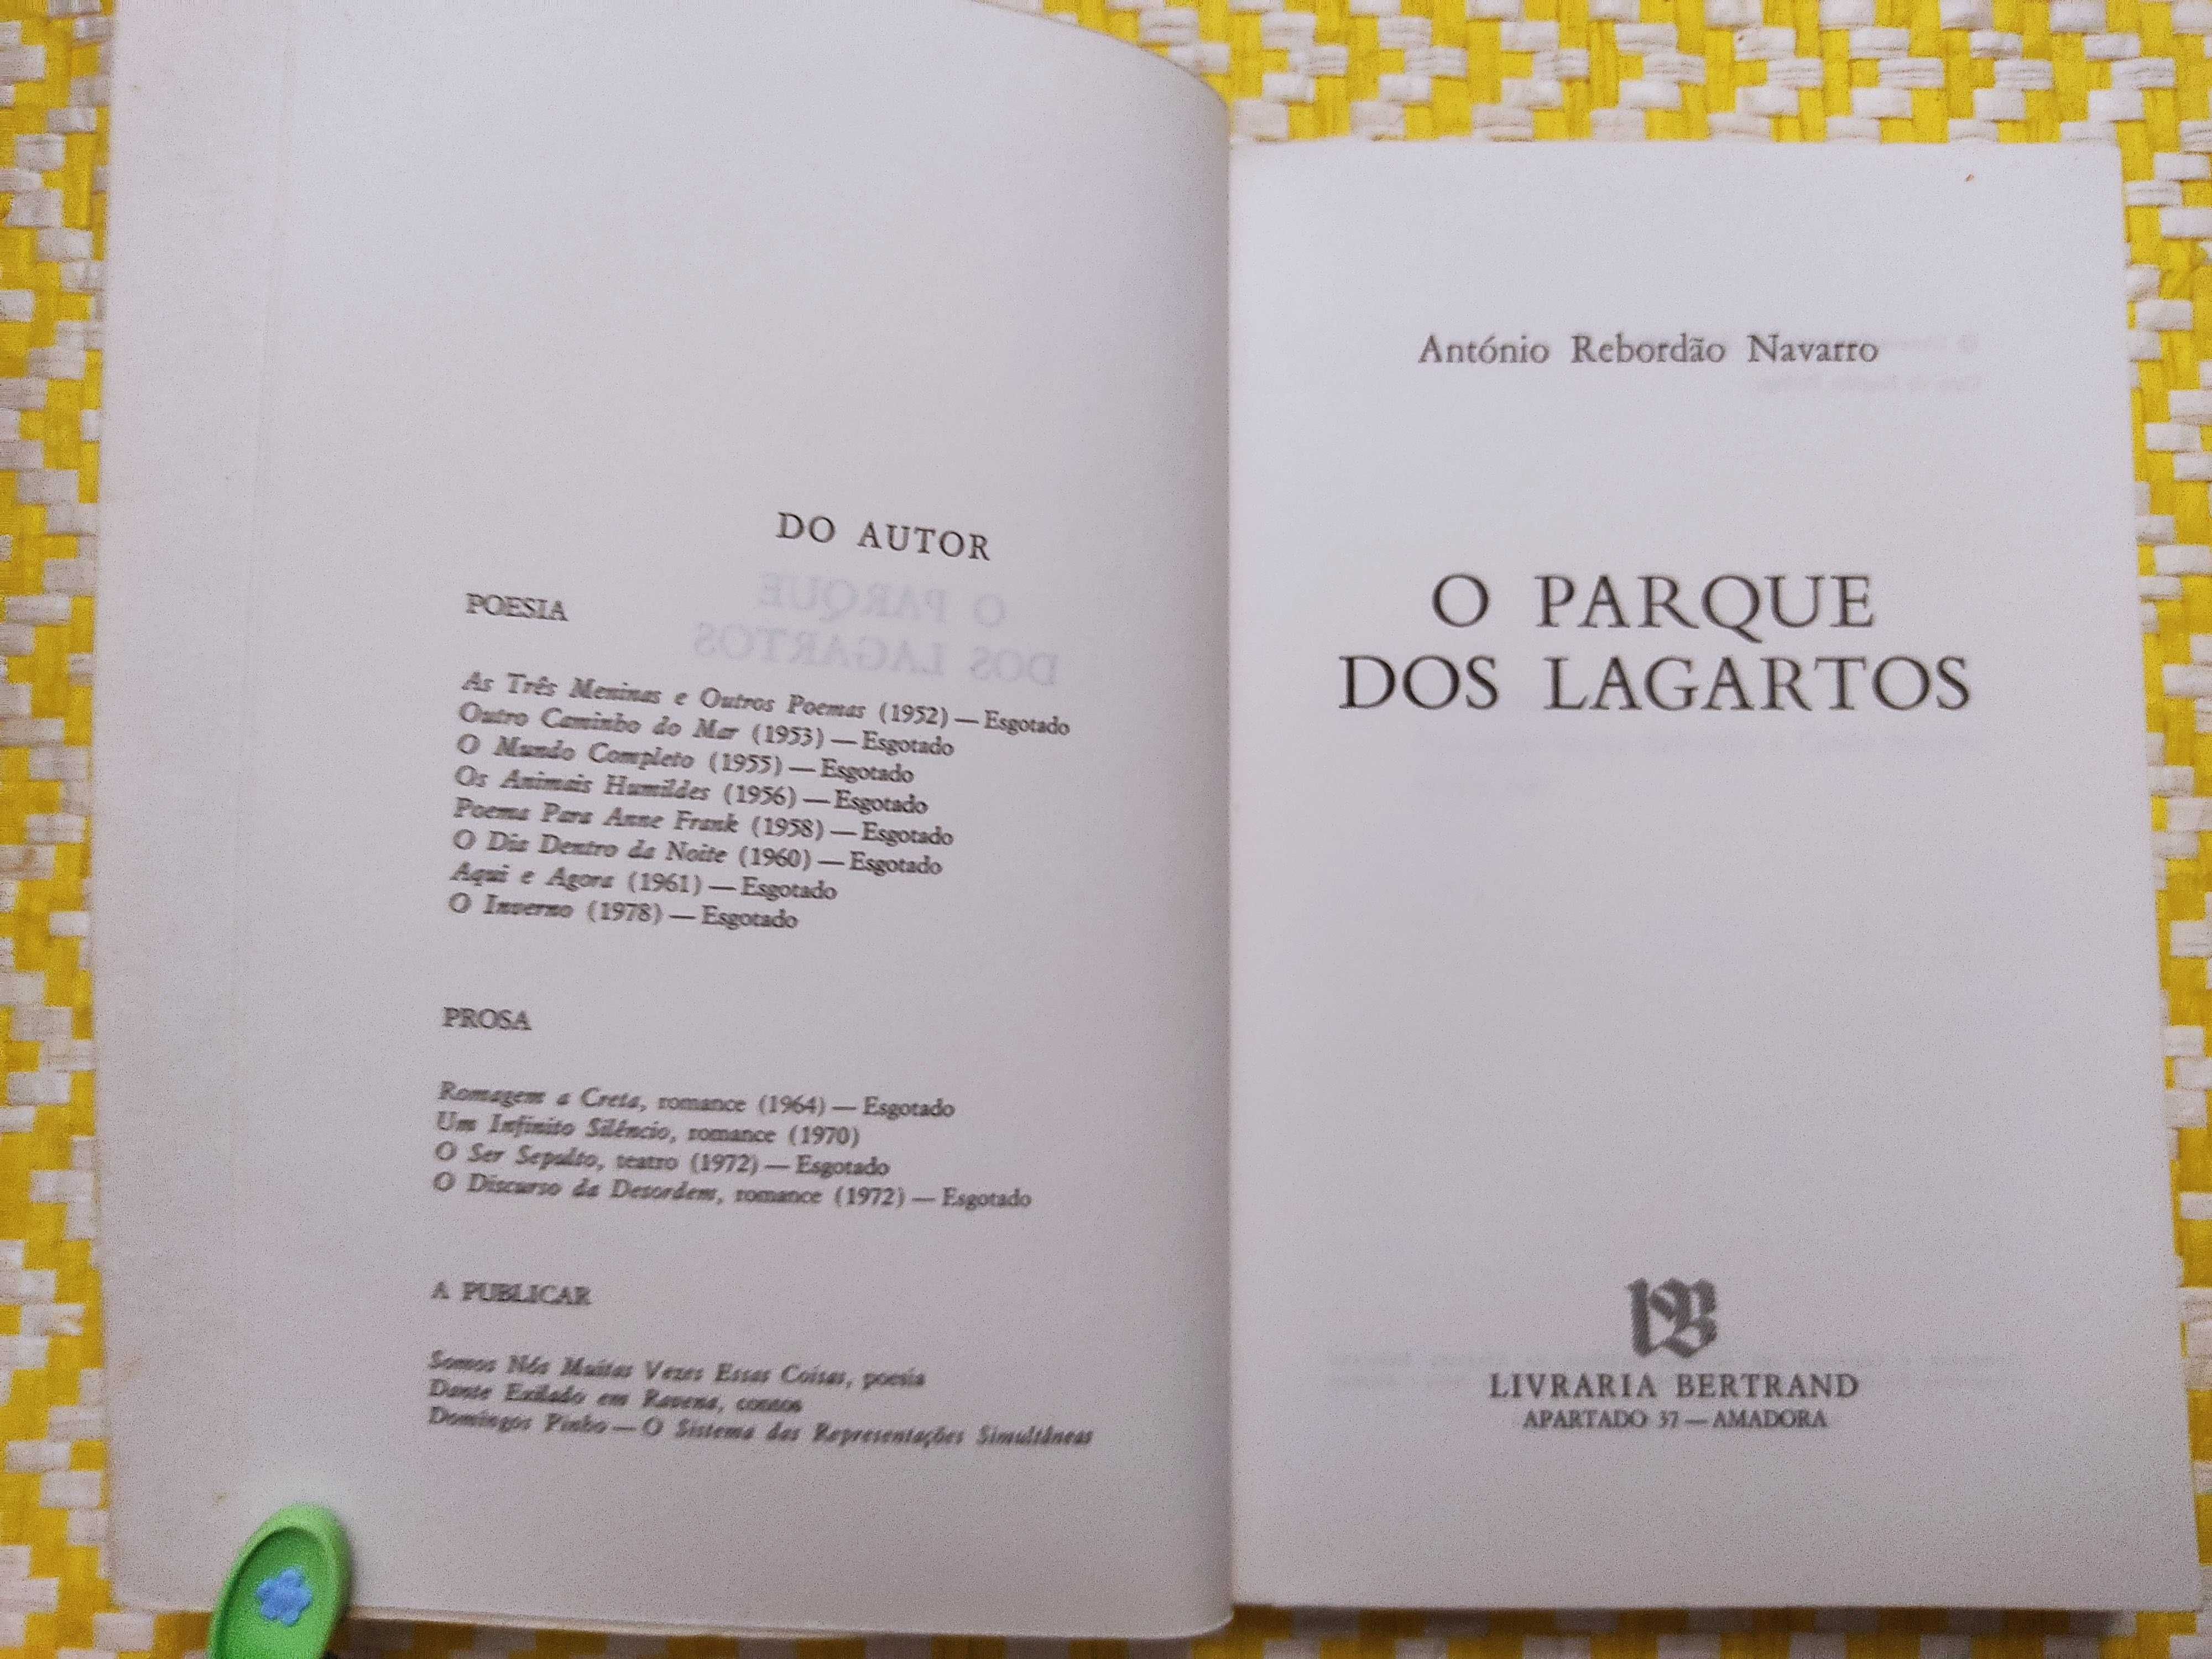 O PARQUE DOS LAGARTOS 
António Rebordão Navarro

1ª Edição – 1982